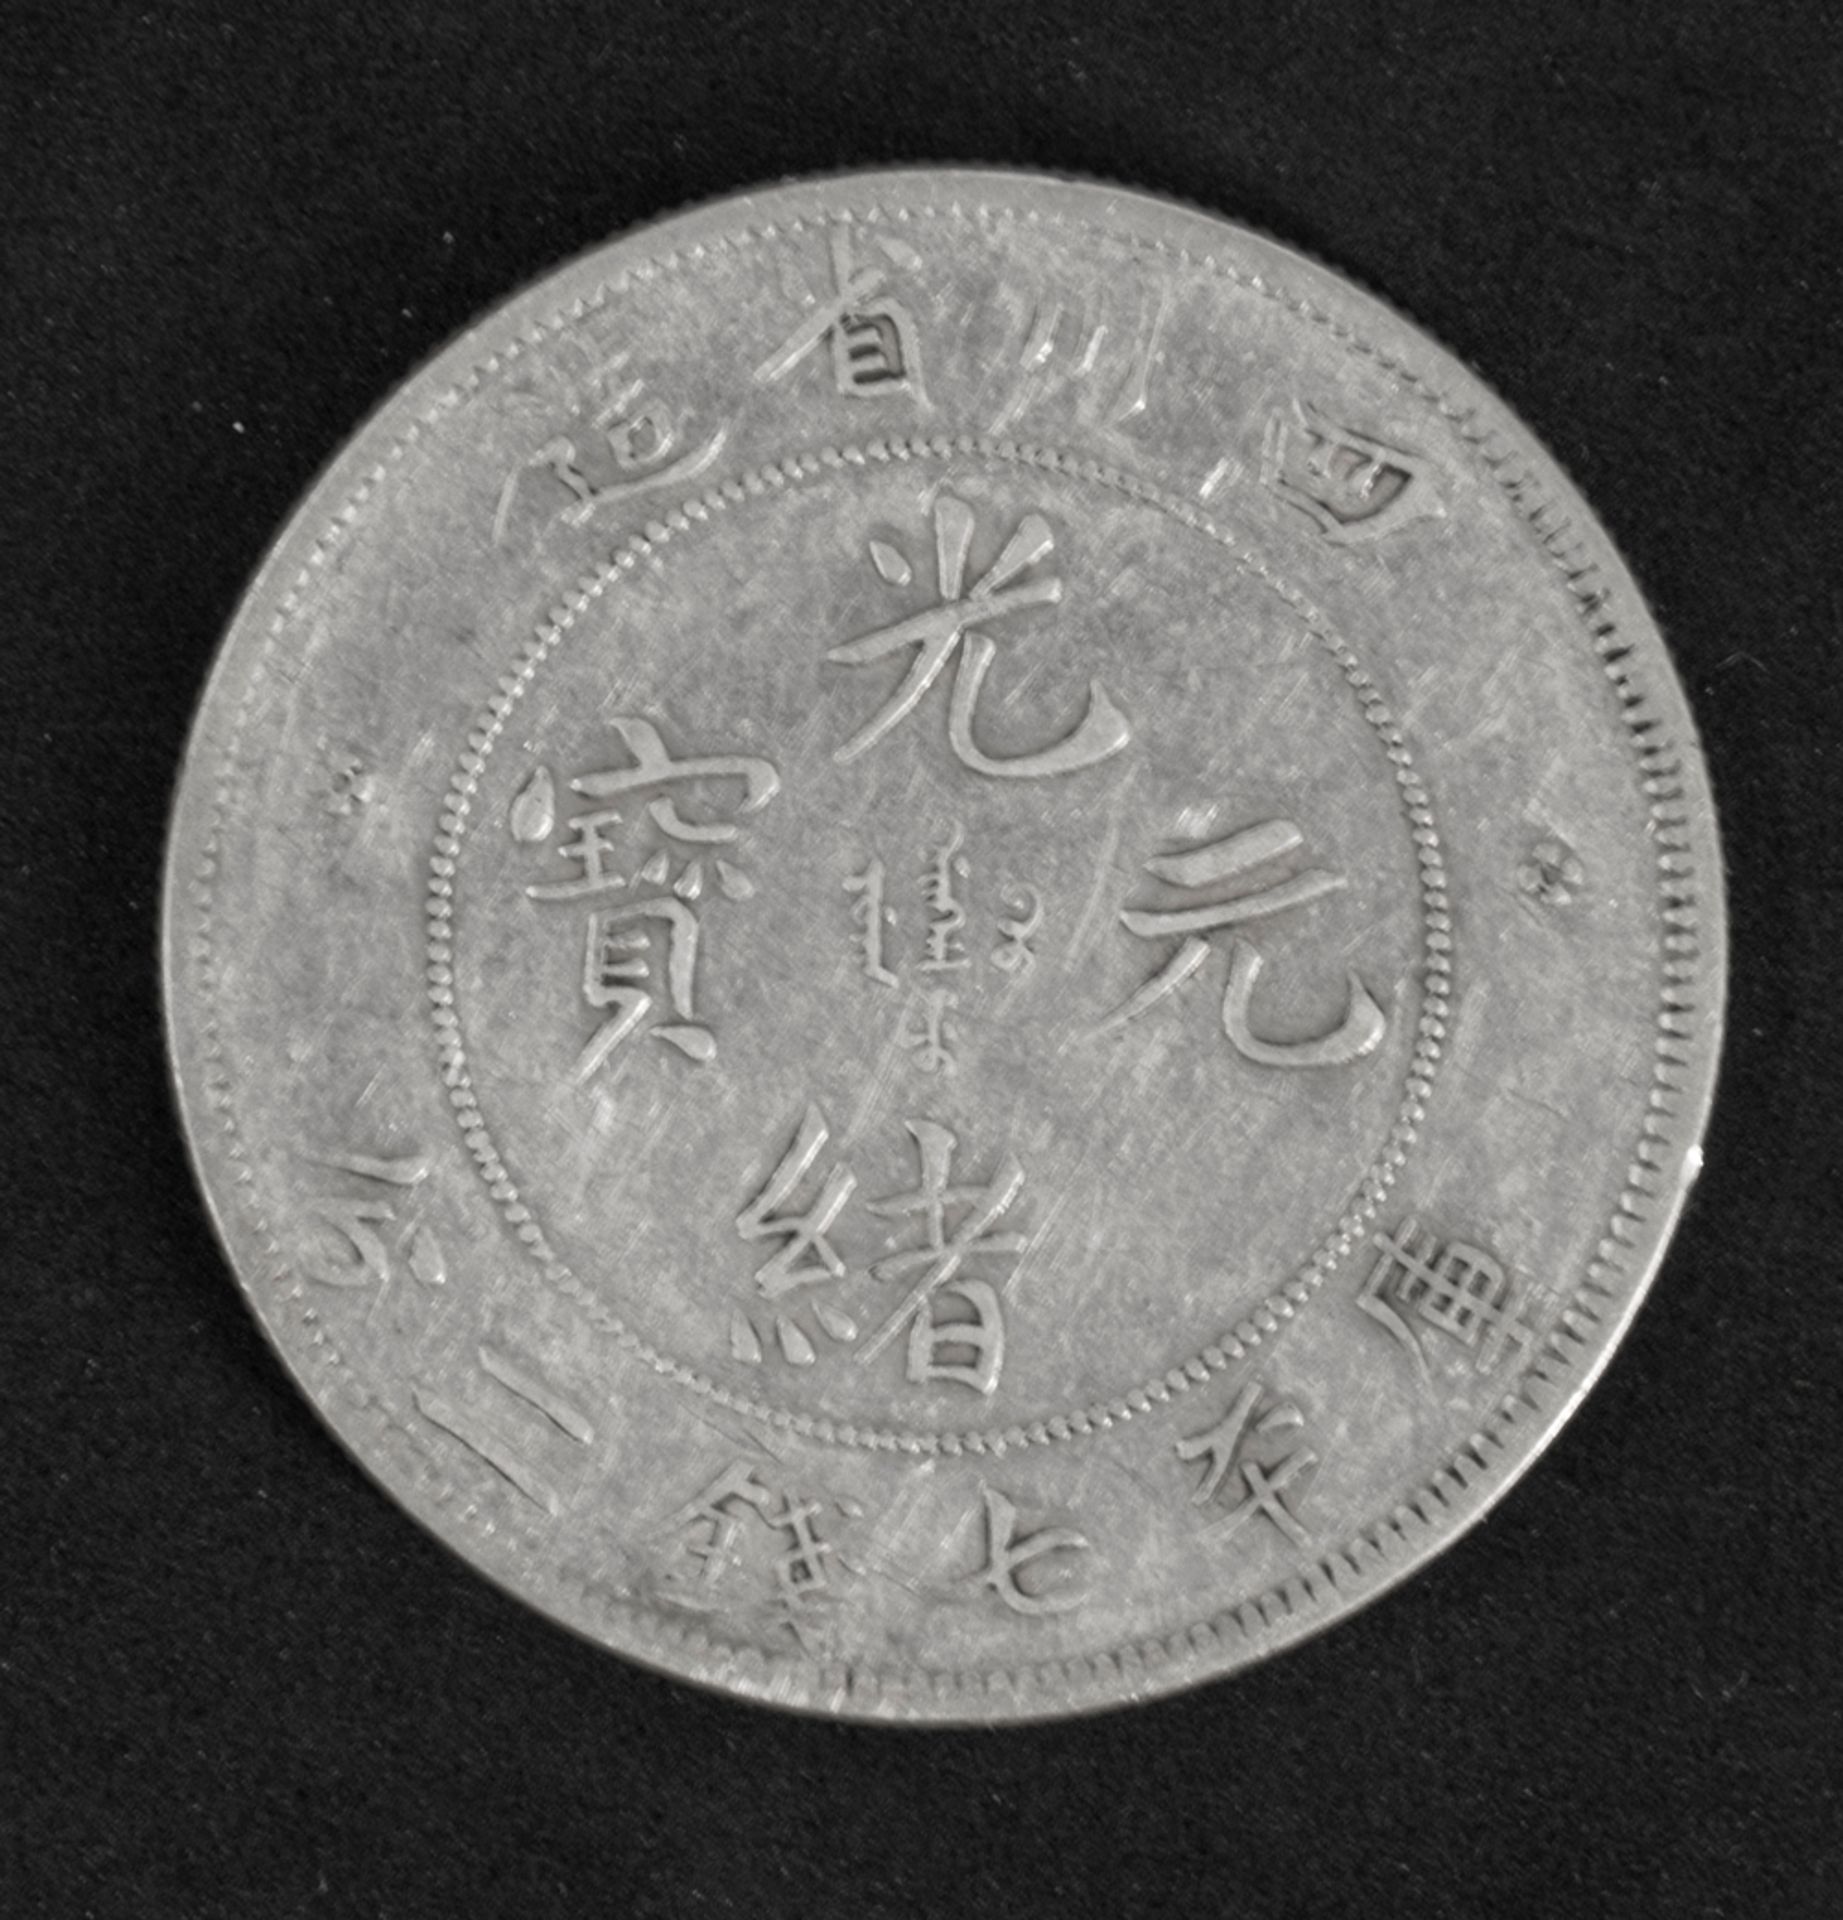 China Provinz Szechuen 1898/1908, 1 Dollar - Silbermünze. Durchmesser: ca. 39 mm. Gewicht: a. 26,7 - Image 2 of 2